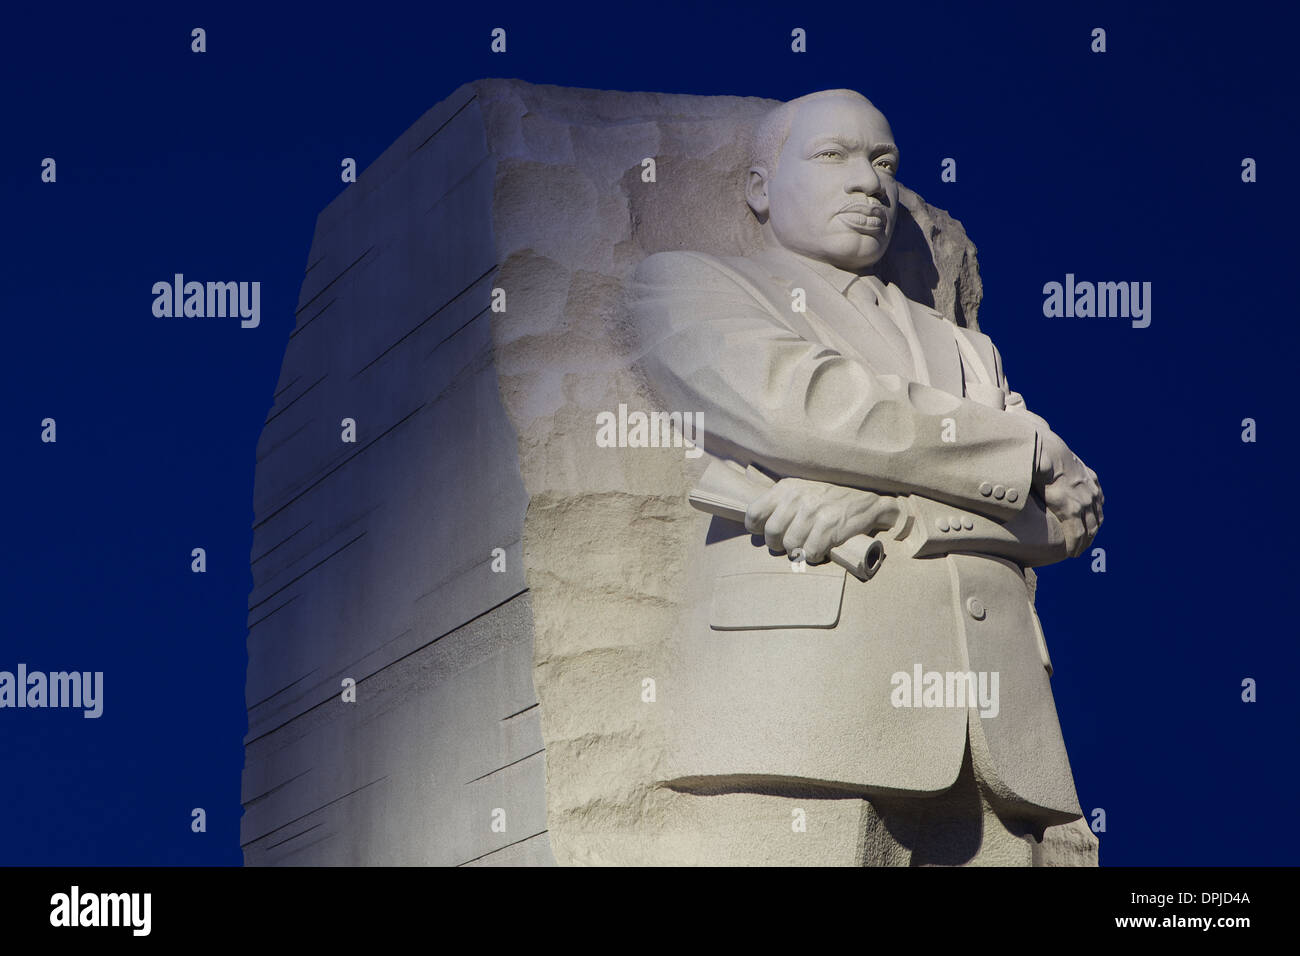 La Sculpture de 30 pieds et mémorial de Martin LUTHER KING, Martin Luther King Jr. La Civil Rights Leader sur le National Mall à Washington DC Banque D'Images